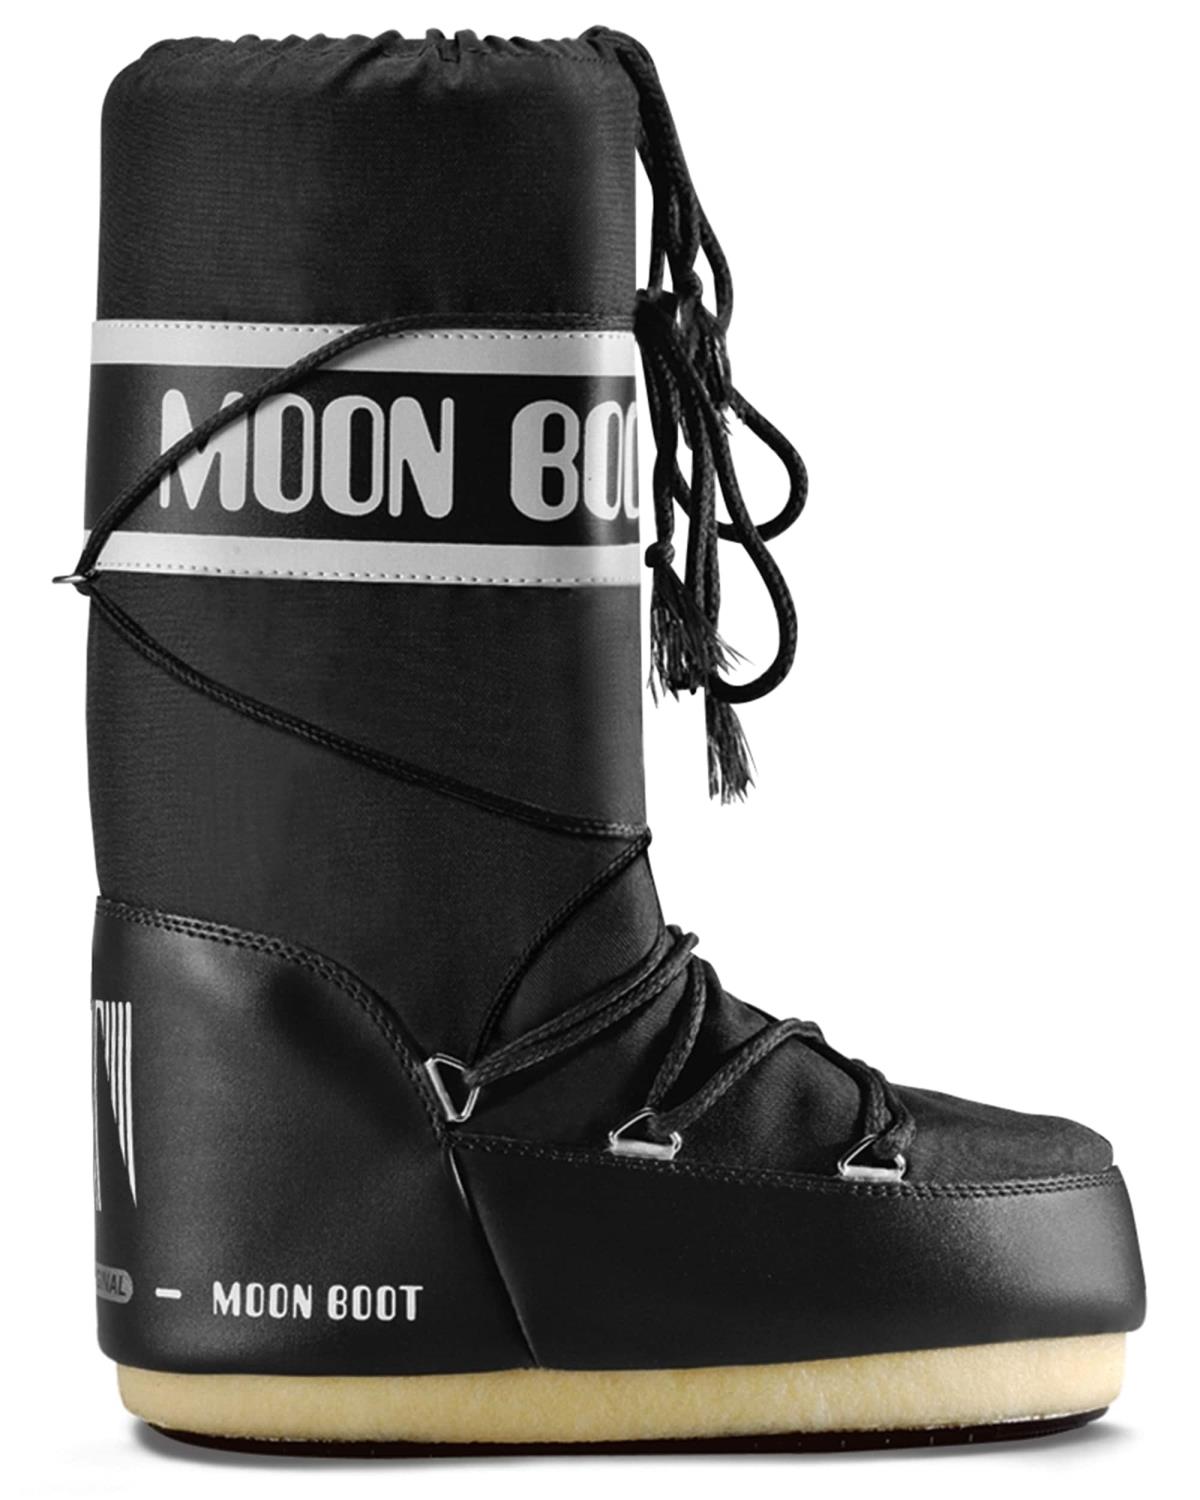 Tecnica Moon boot